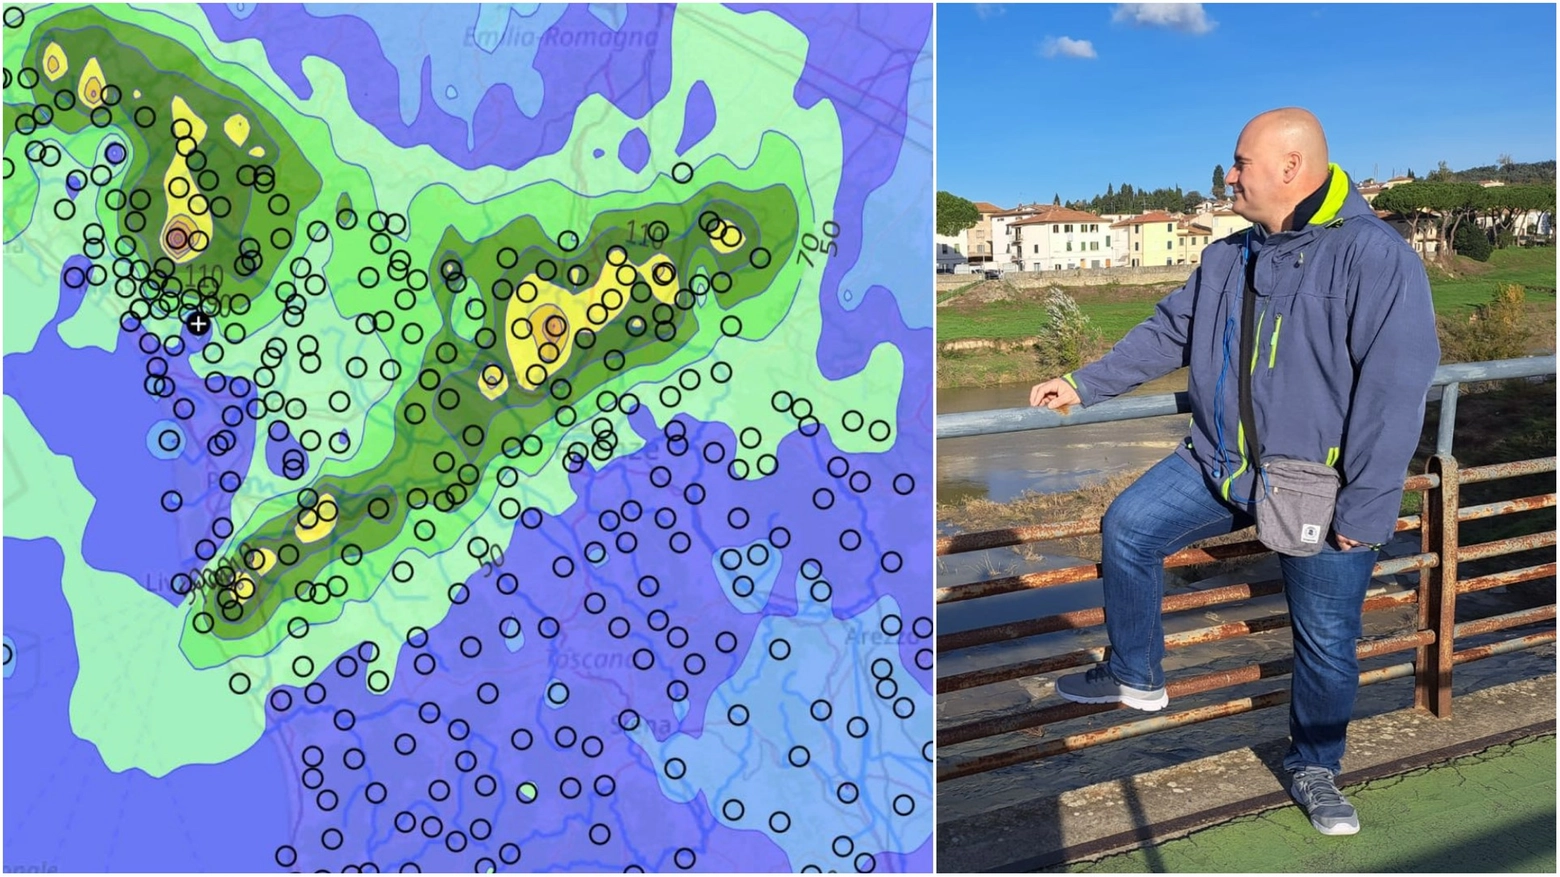 La mappa delle precipitazioni (dalla pagina Facebook di Eugenio Giani) e il metereologo Gordon Baldacci